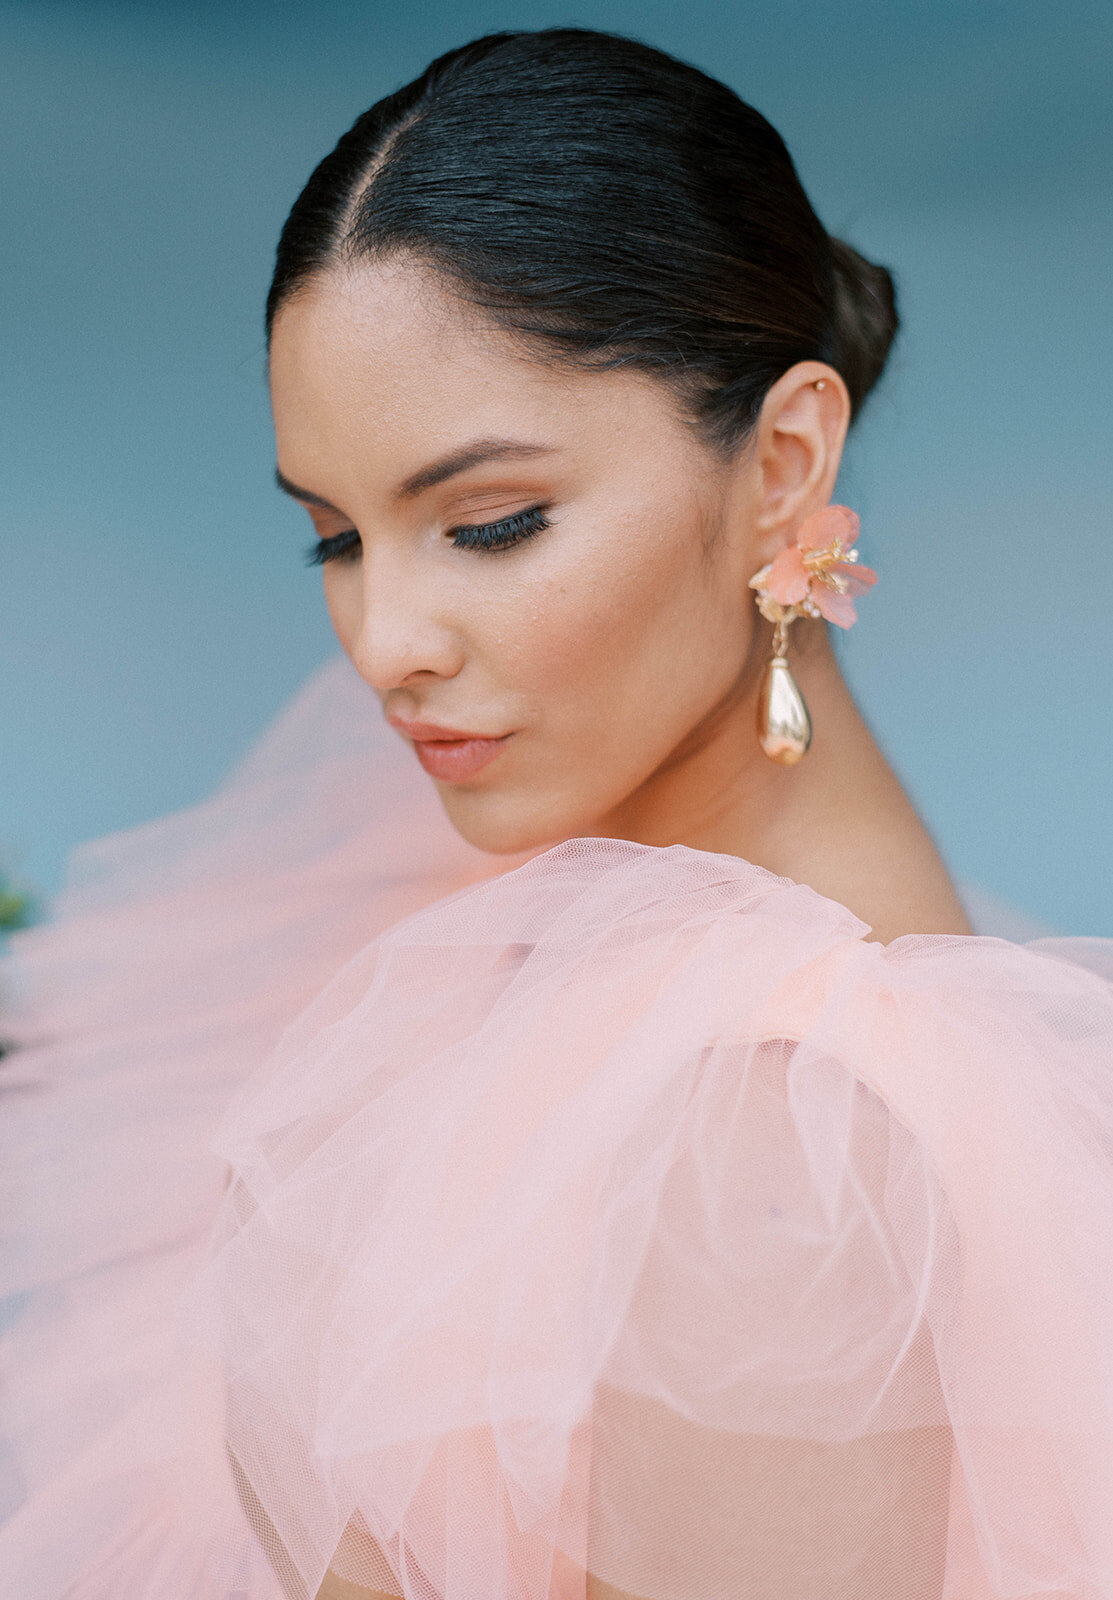 woman wearing pink dress wearing gold earrings